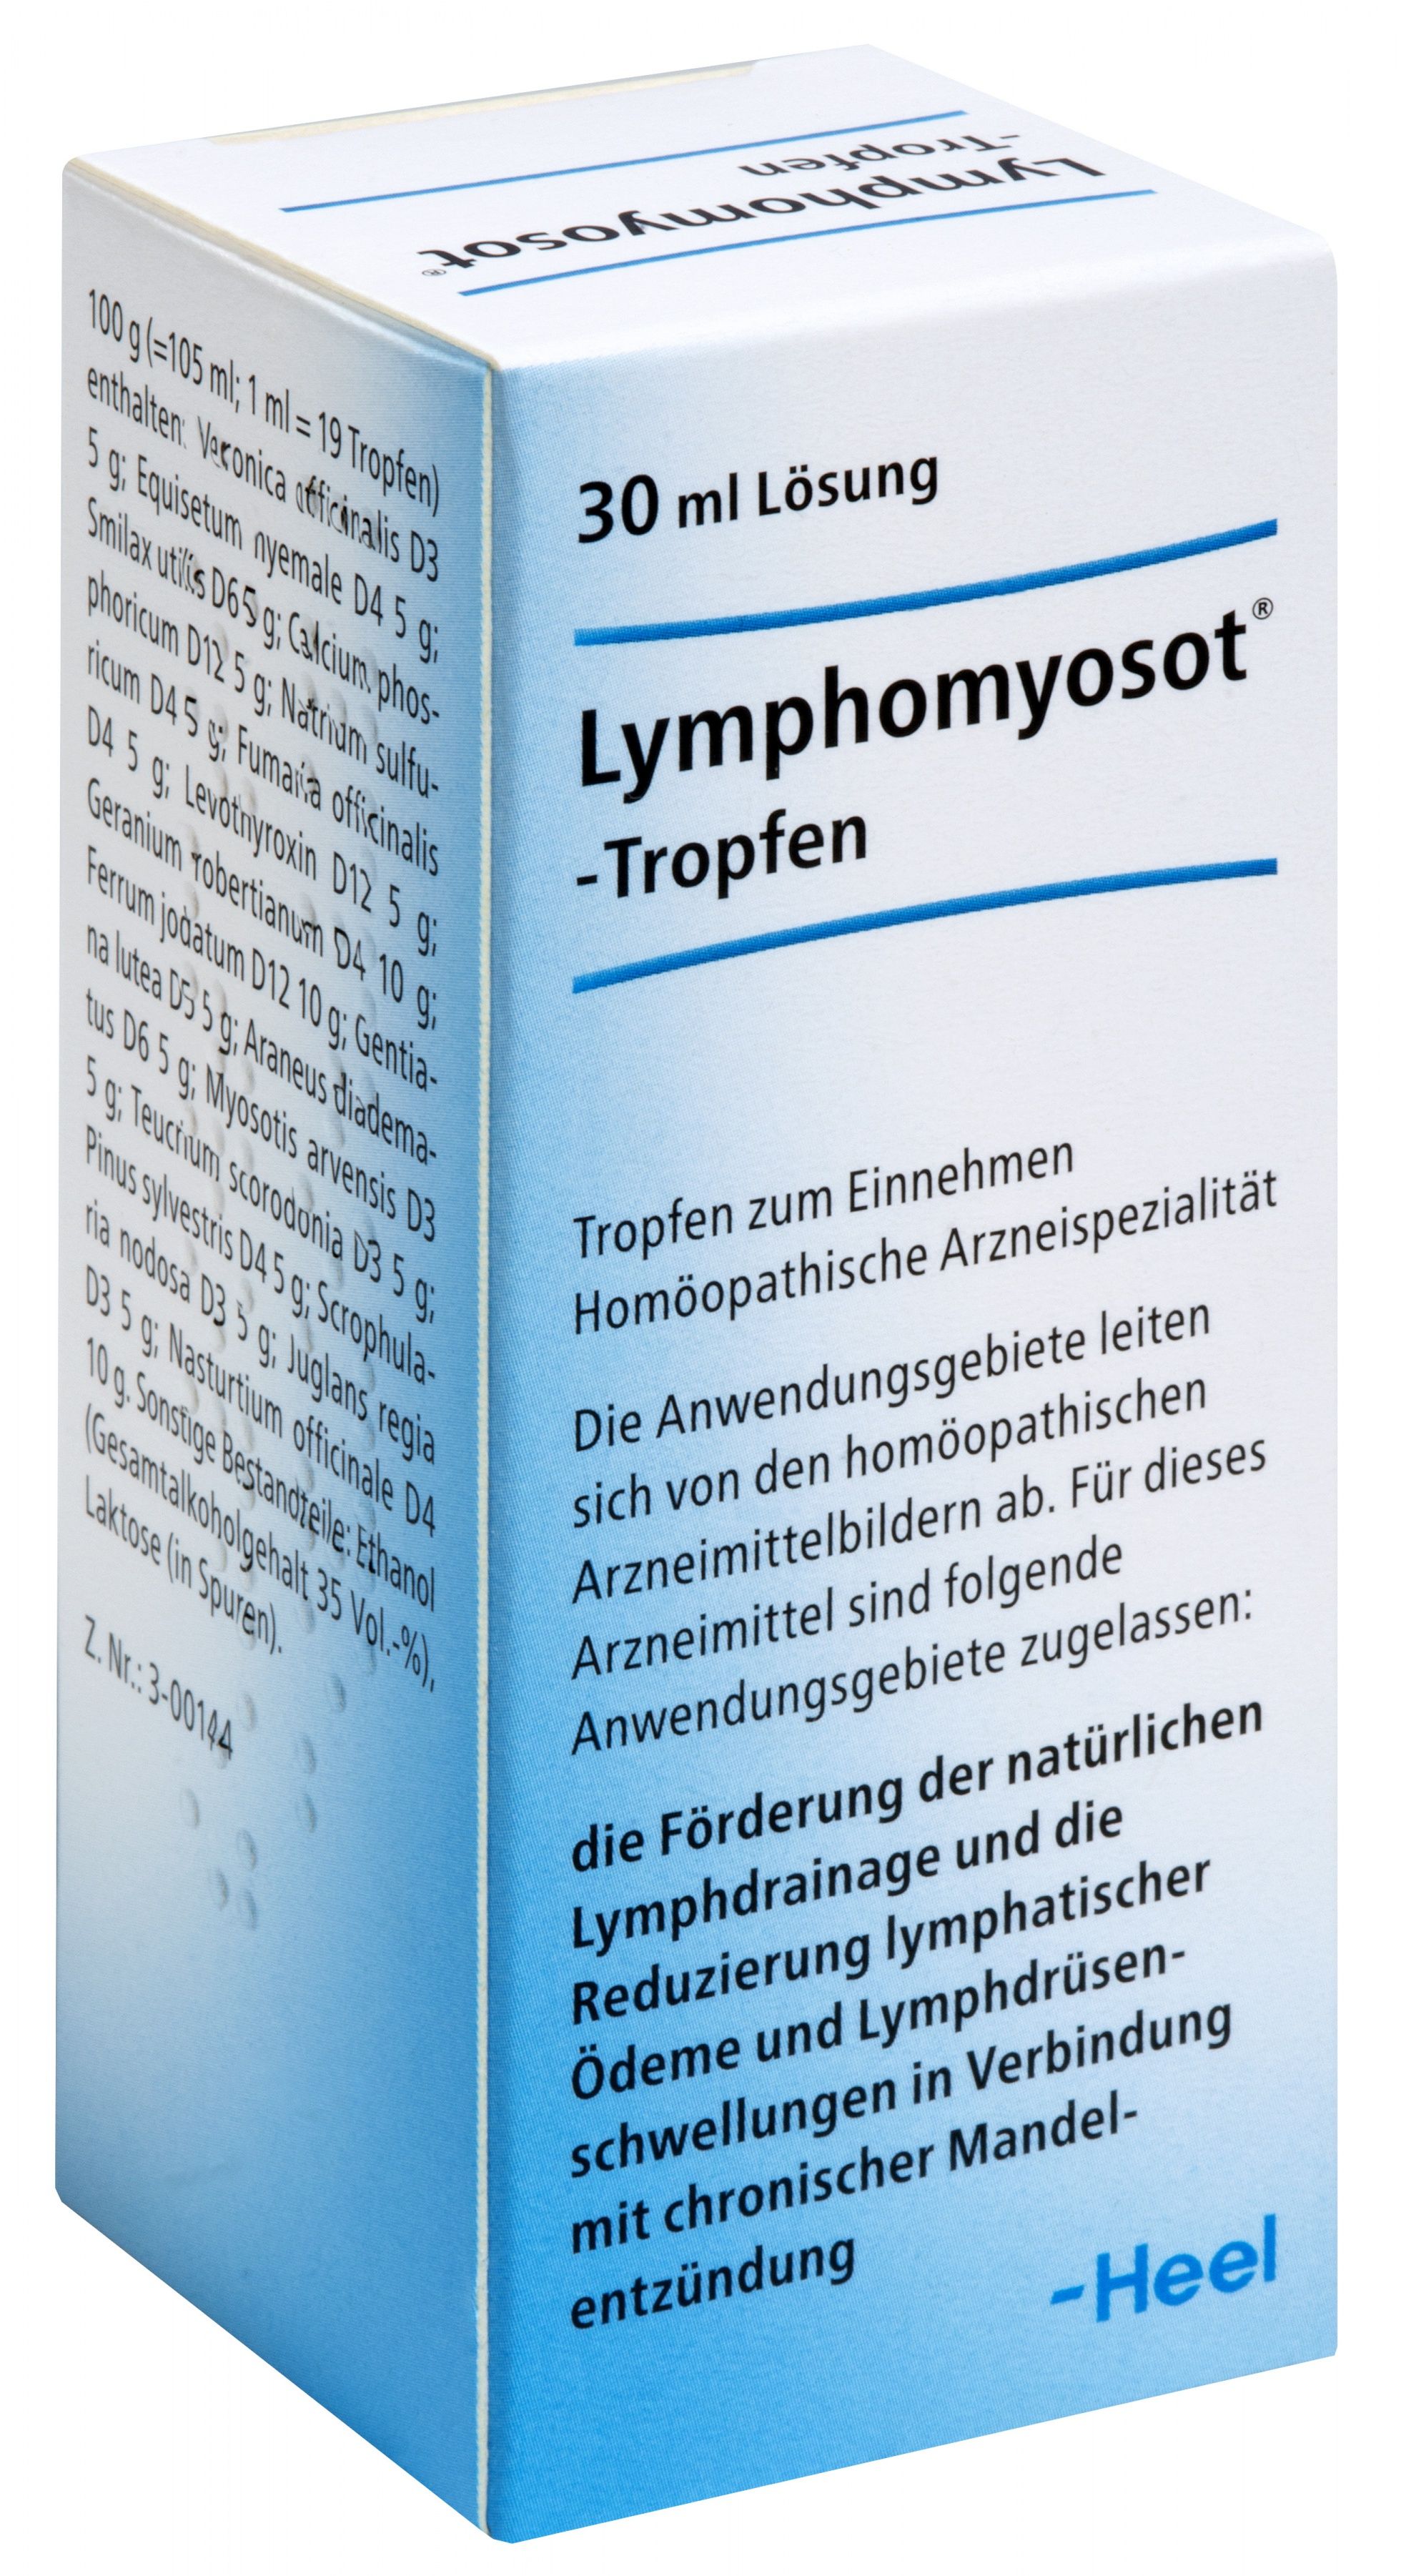 Abbildung Lymphomyosot - Tropfen